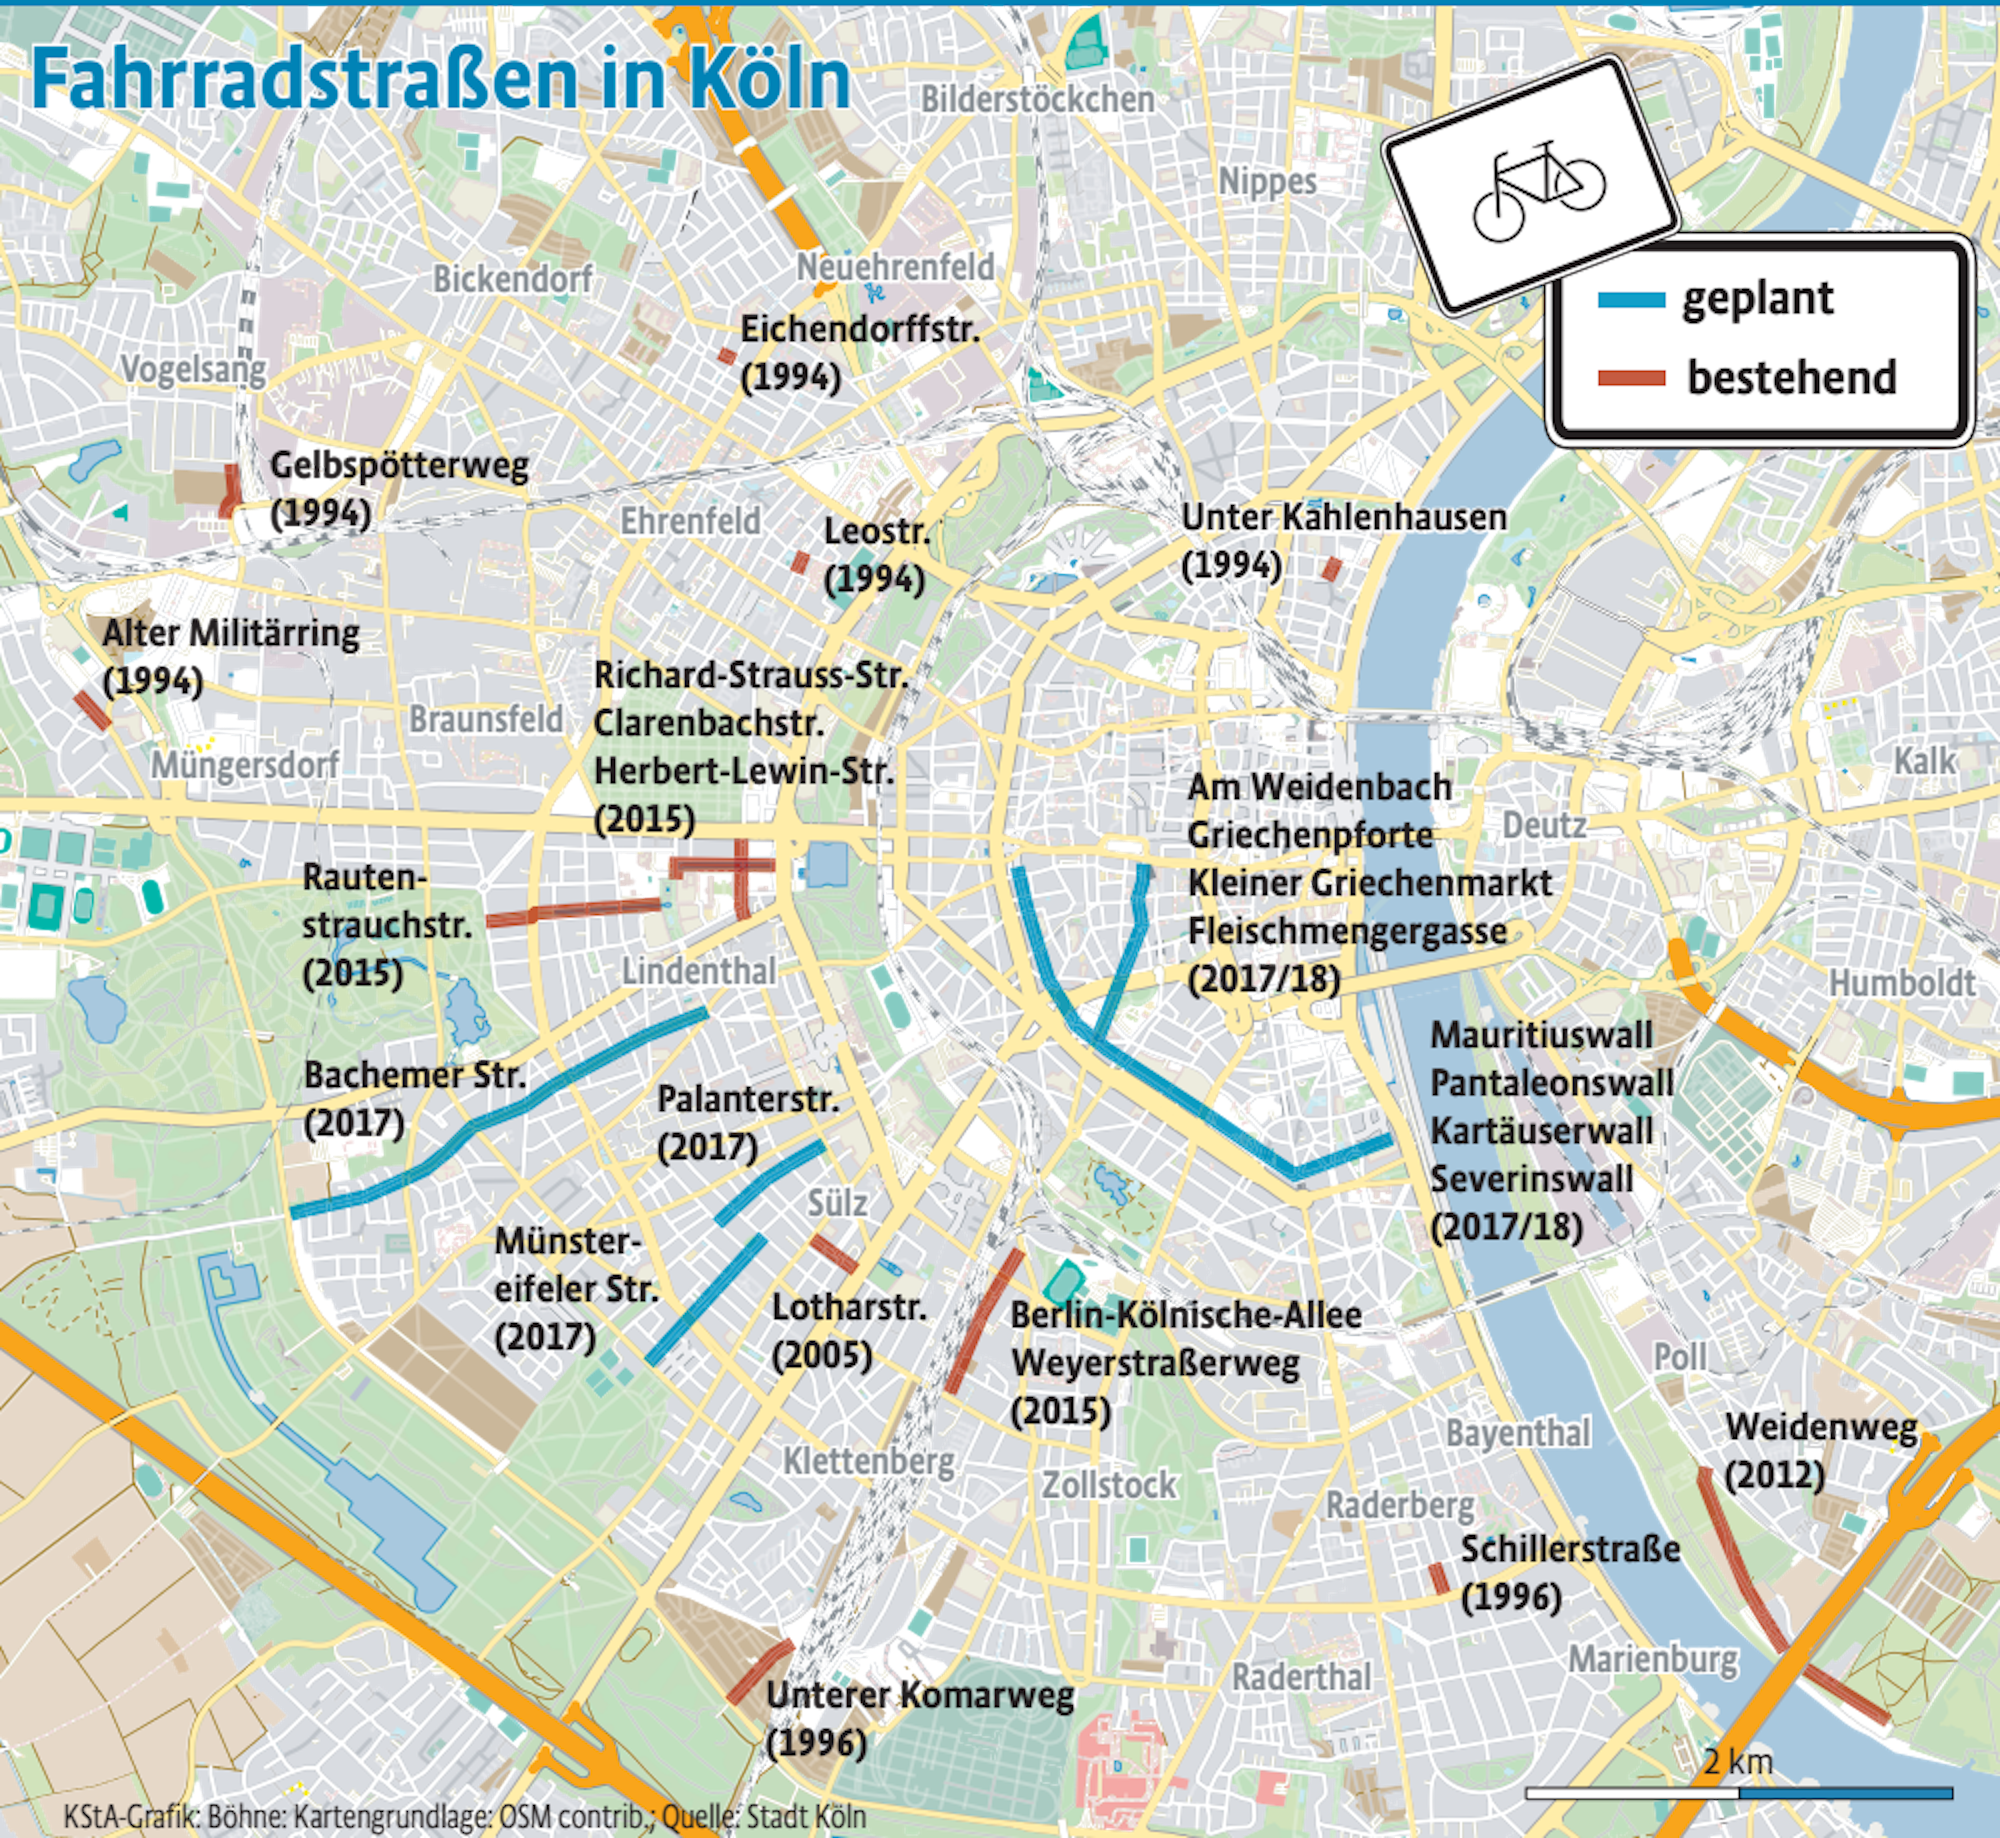 Geplante und bestehende Fahrradstraßen in Köln.